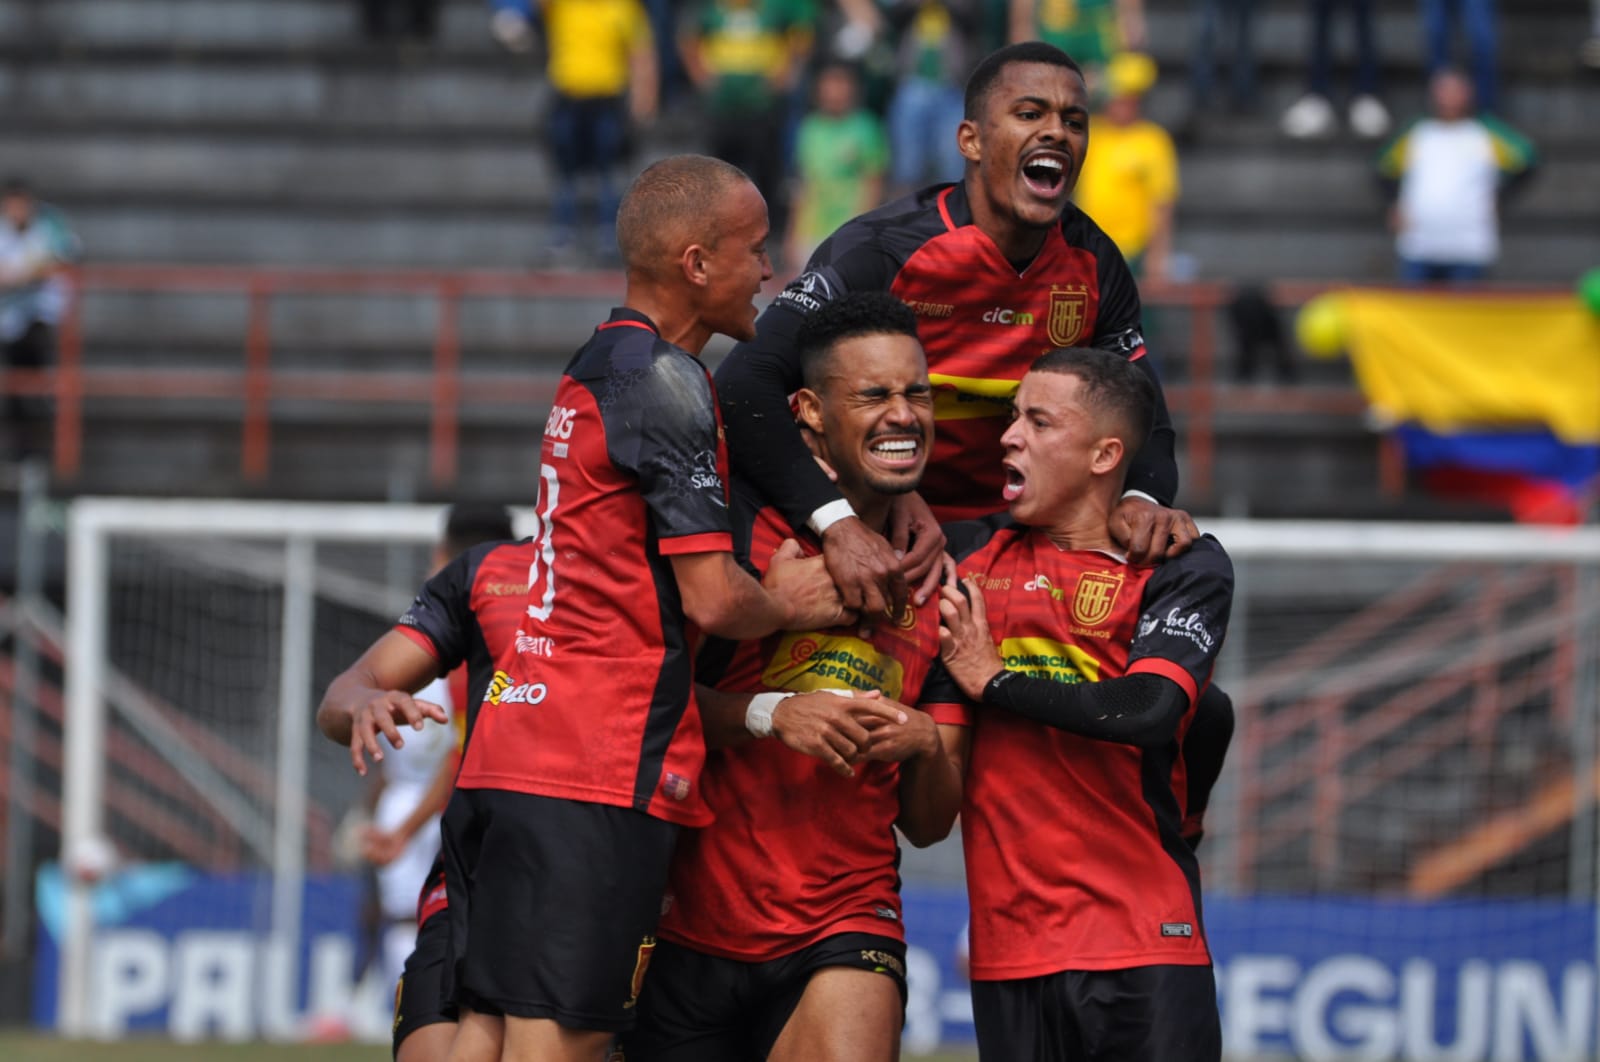 4ª Divisão: Com possíveis desistências, Flamengo garante participação na última  divisão do futebol paulista - Guarulhos Hoje